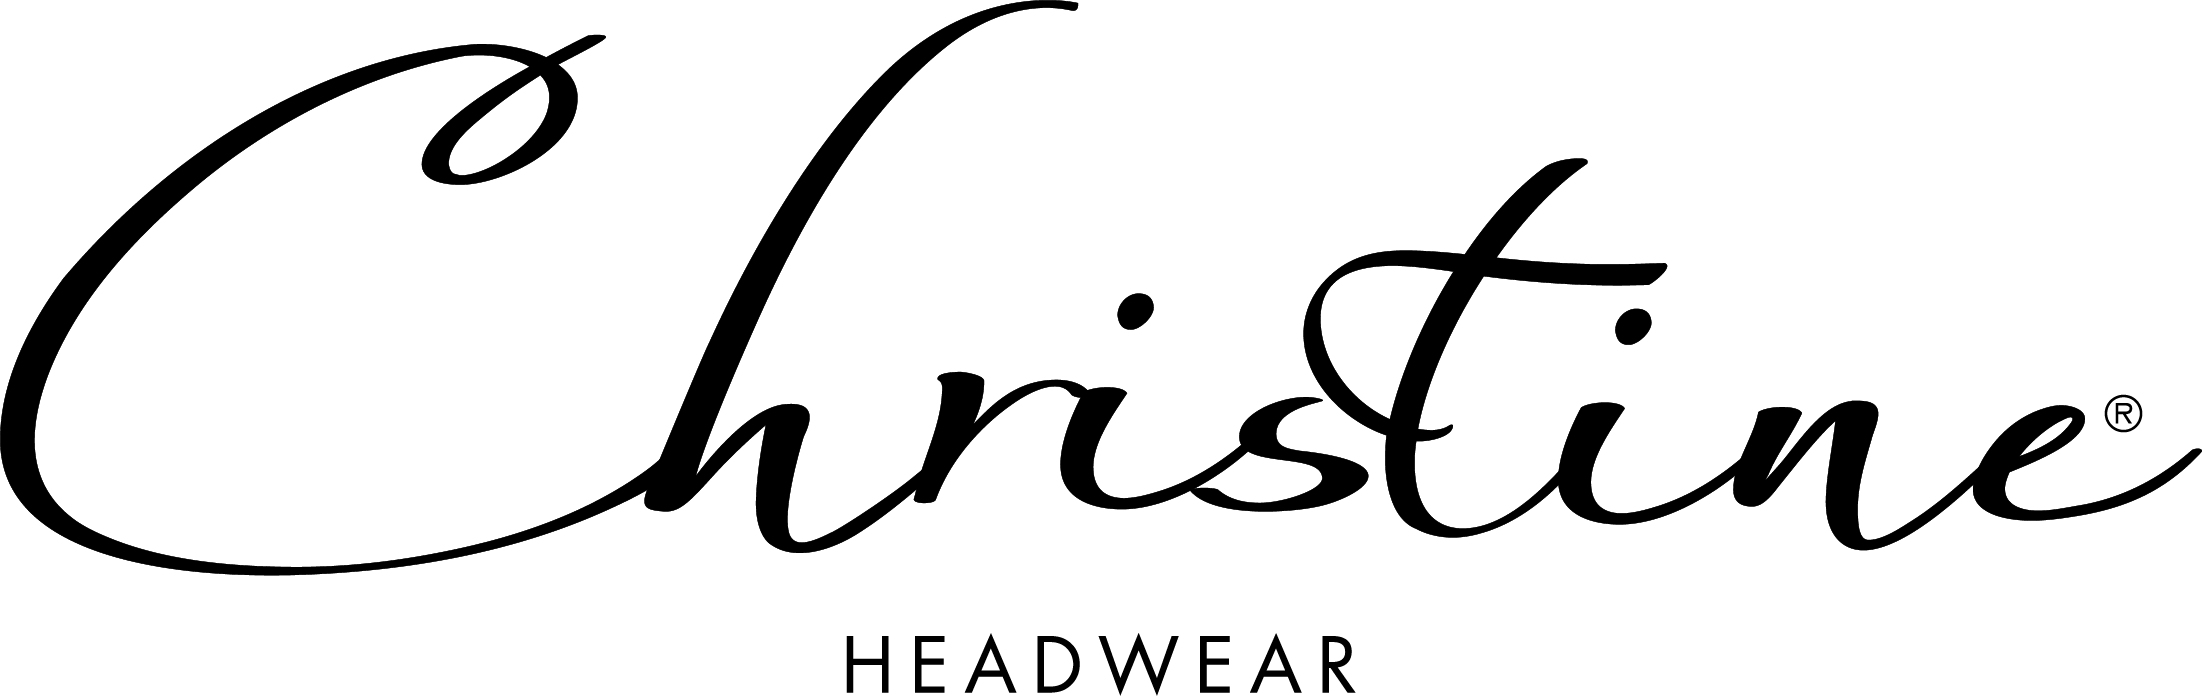 Christine Headwear logo